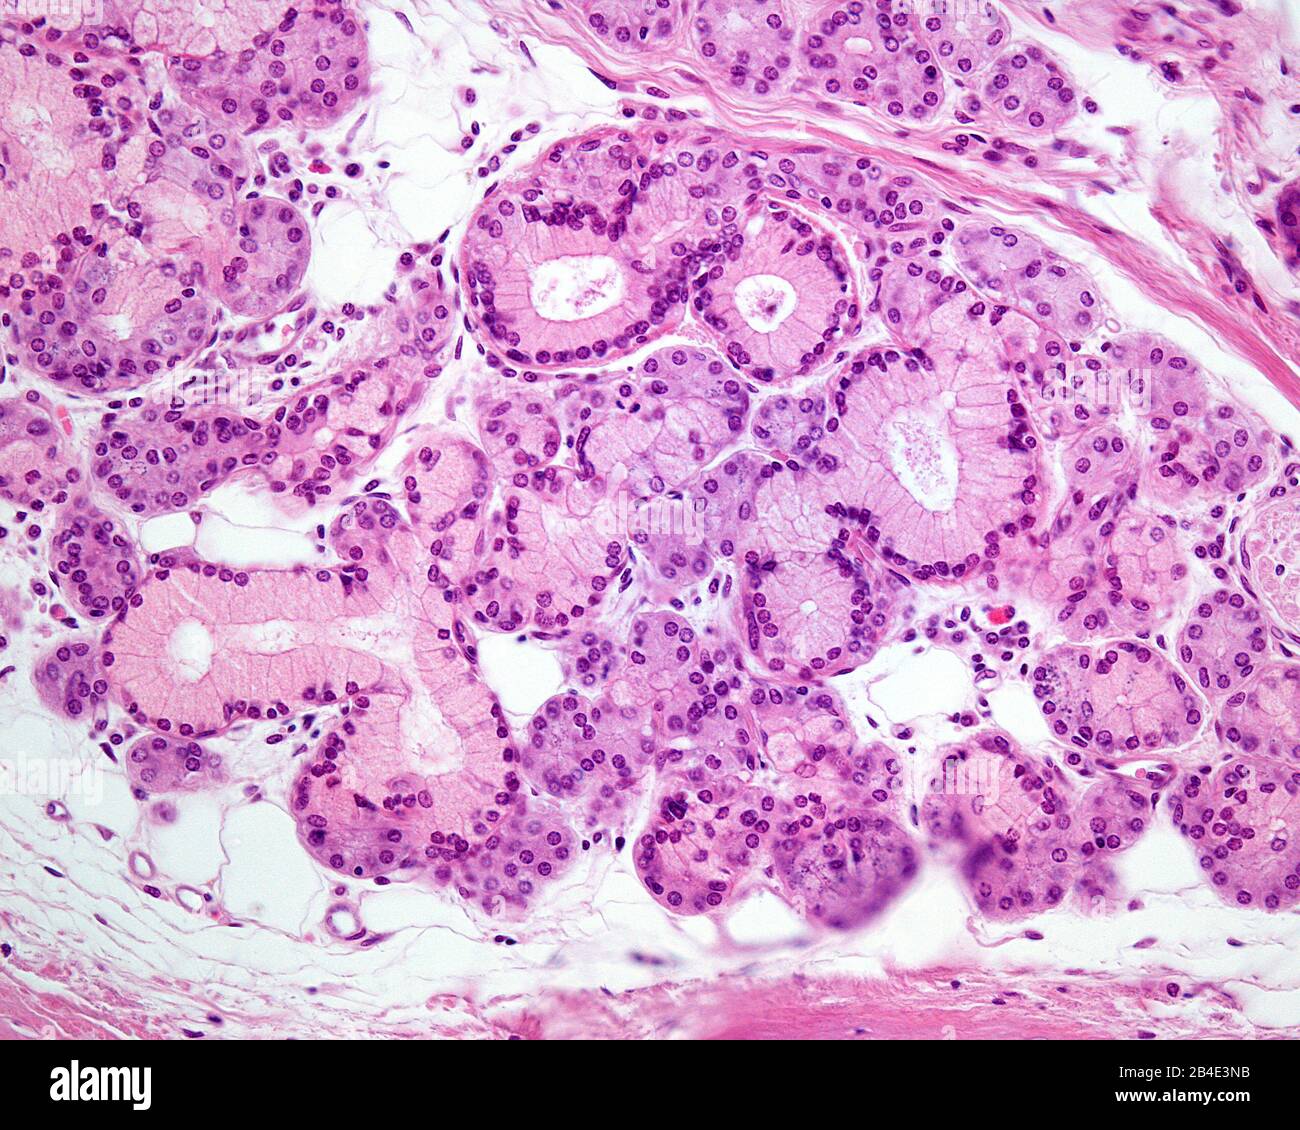 Mischdrüse, die sowohl Schleimzellen (mit blassem Zytoplasma) als auch seröse Zellen in derselben Drüse zeigt. Mikroskopmikroskop. Hämatoxylin & Eosin Fleck Stockfoto